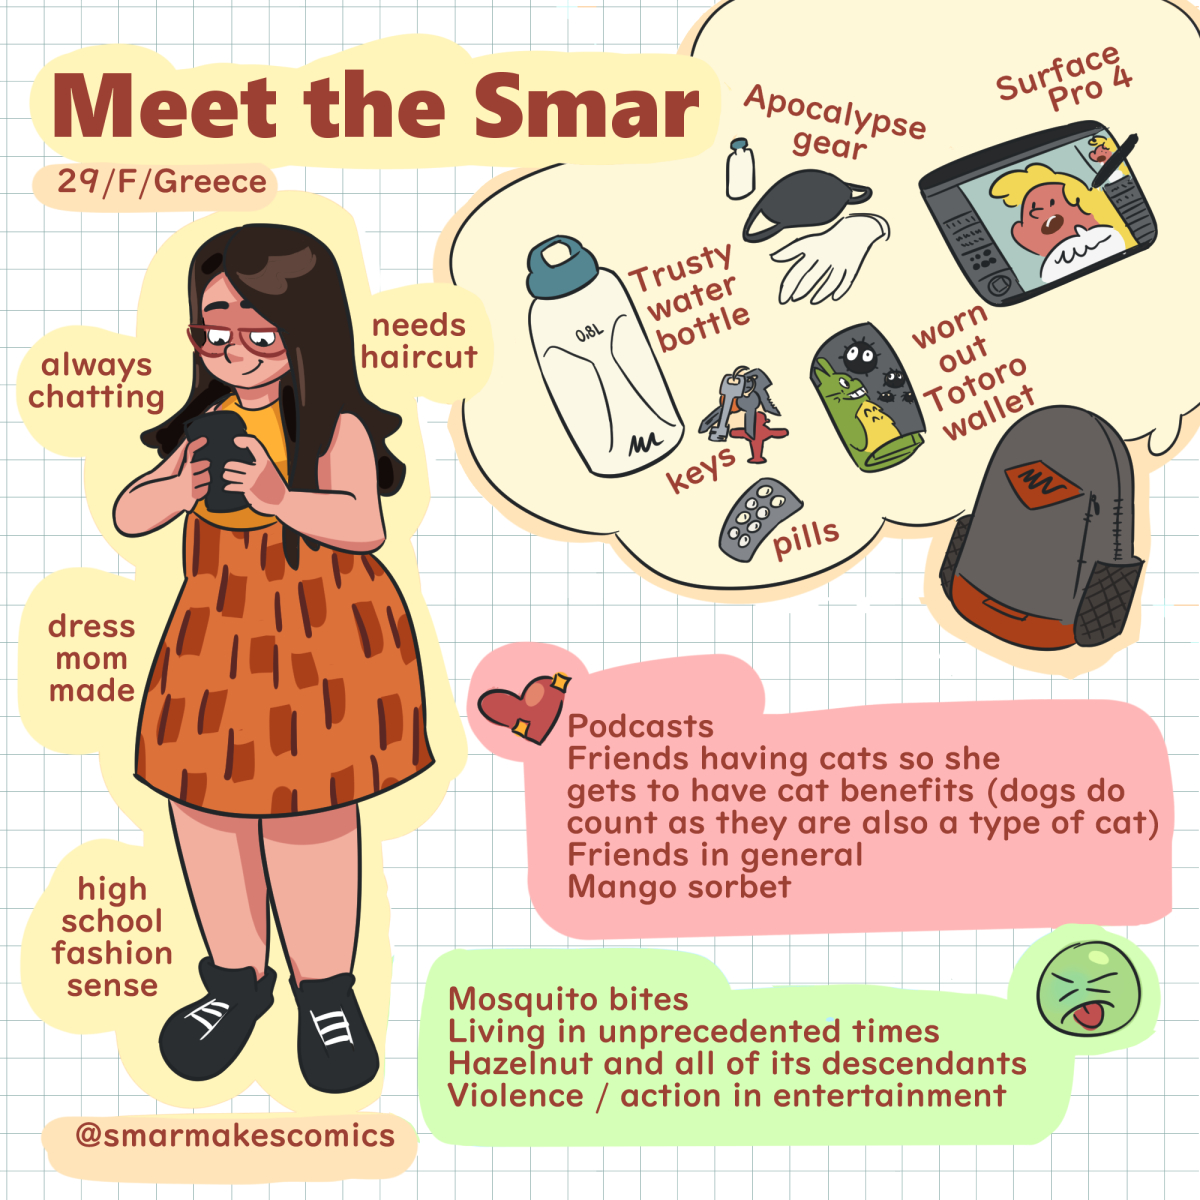 Meet the Smar